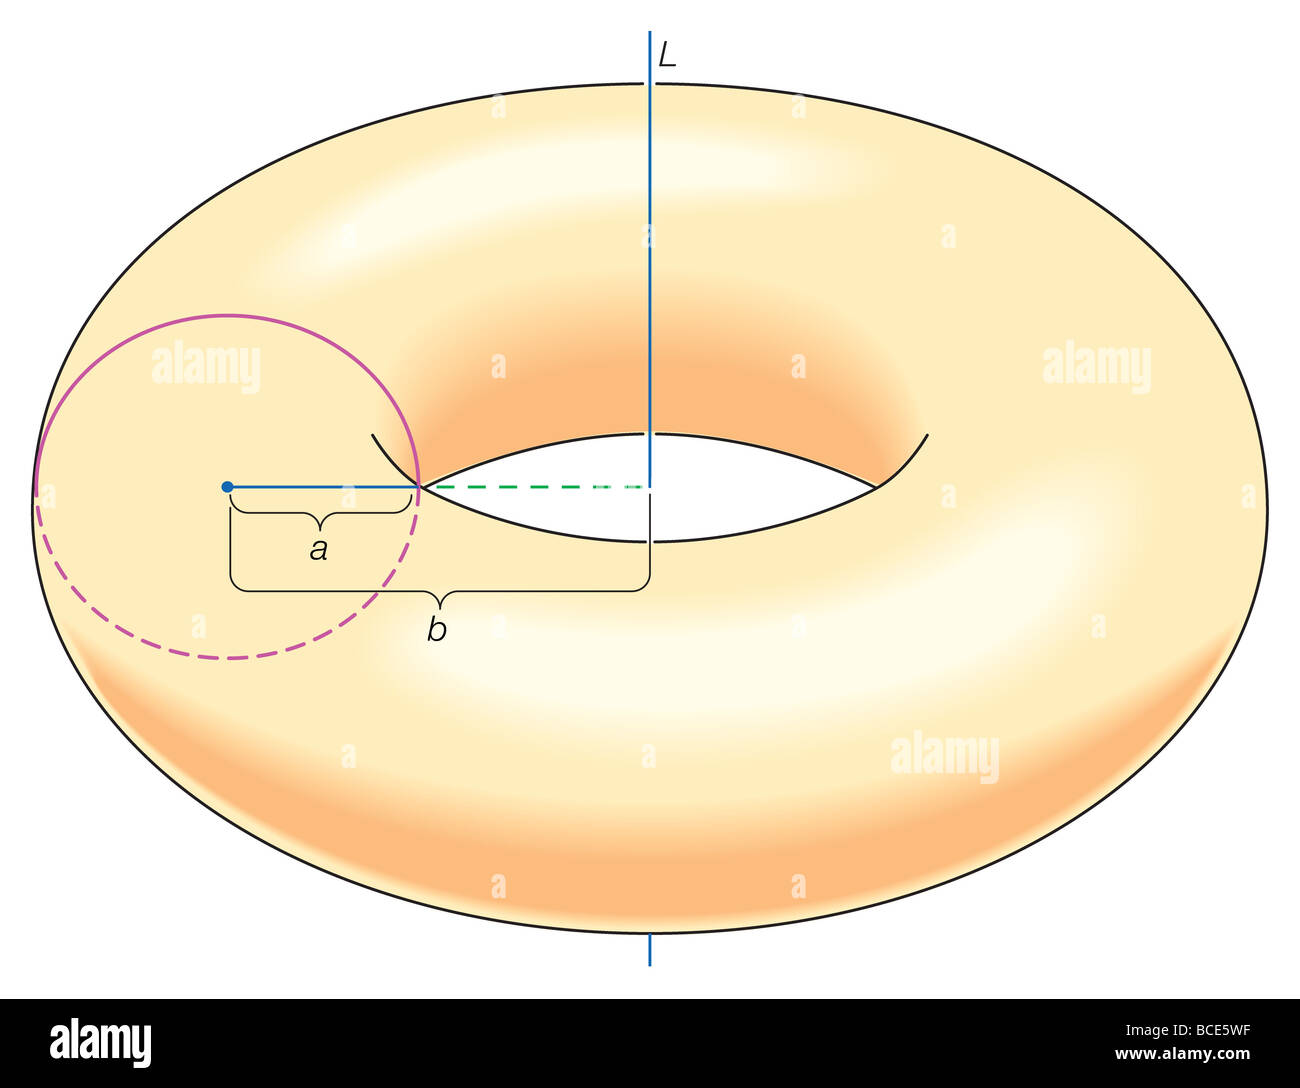 Pappus Theorem bewiesen die Formel für das Volumen des soliden Torus erhalten durch Drehen der Scheibe mit dem Radius einer ganzen Linie L. Stockfoto